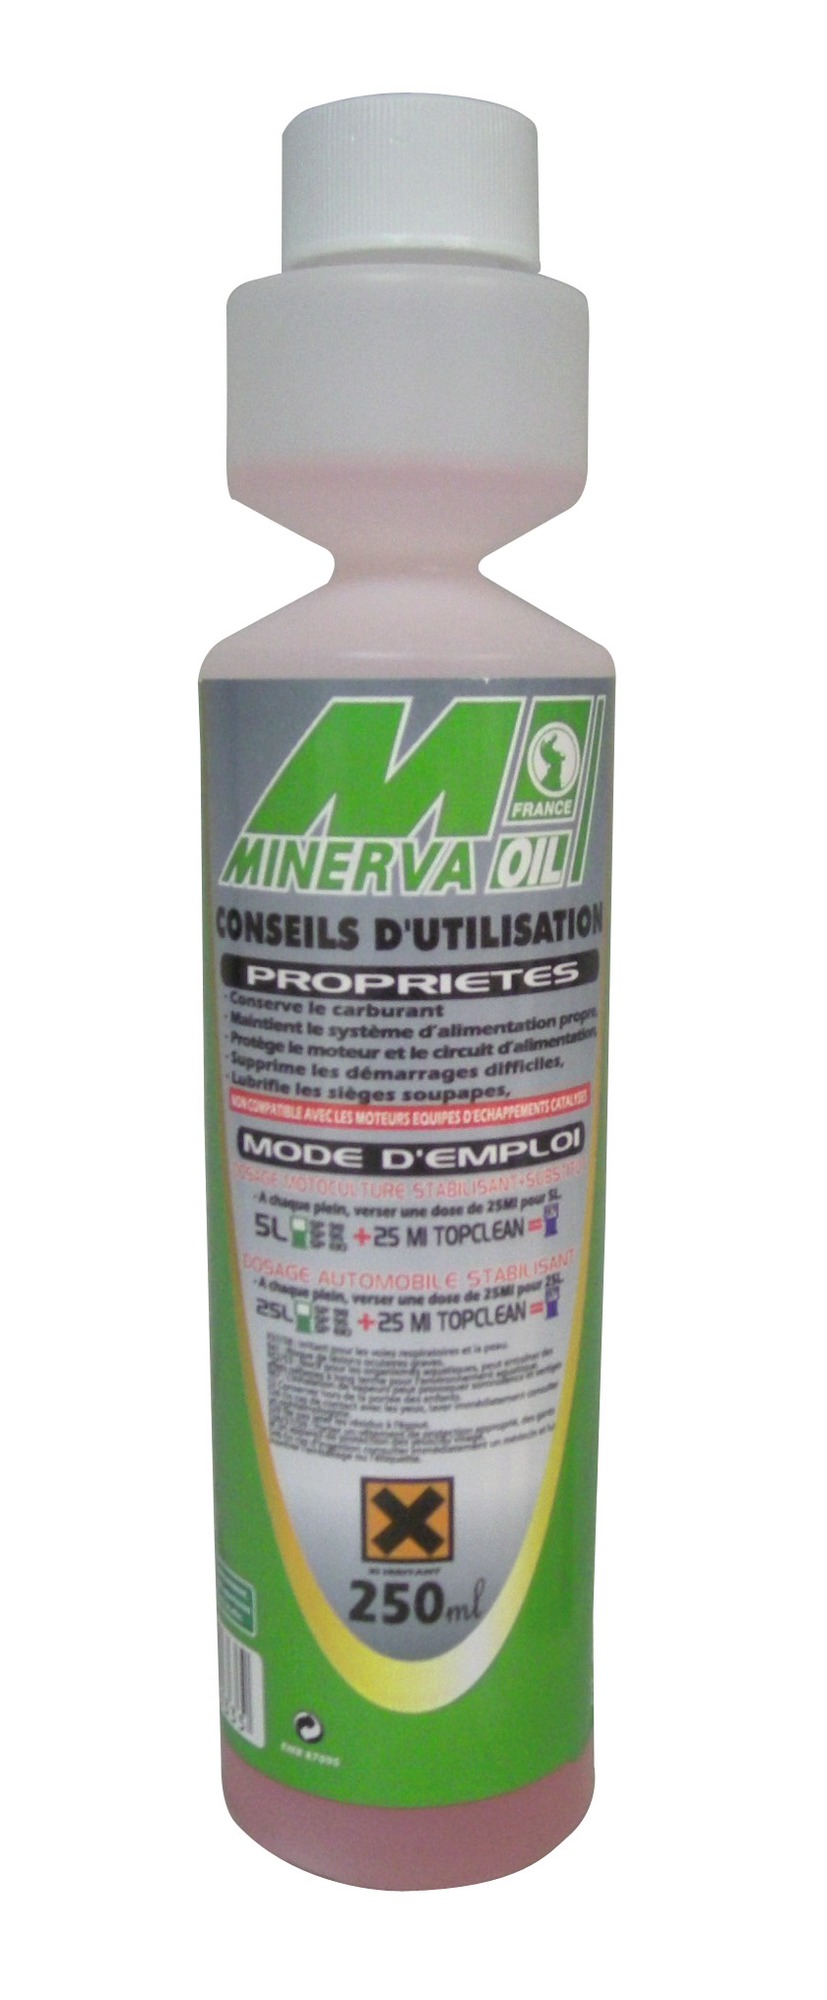 Substitut de plomb Top Clean Minerva - 250 ml